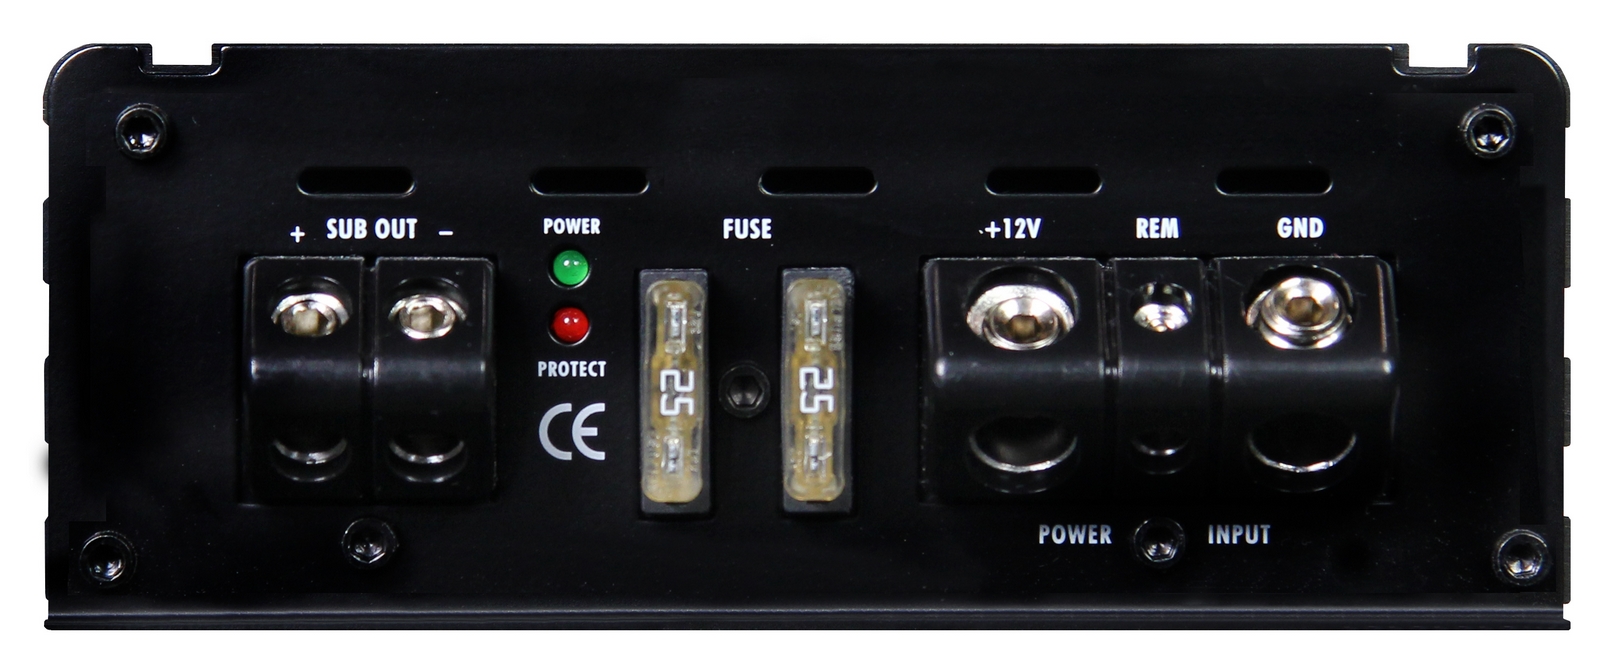 Crunch GTO1750 Digital Monoblock 1-Kanal Verstärker Endstufe Amplifier 750 Watt RMS